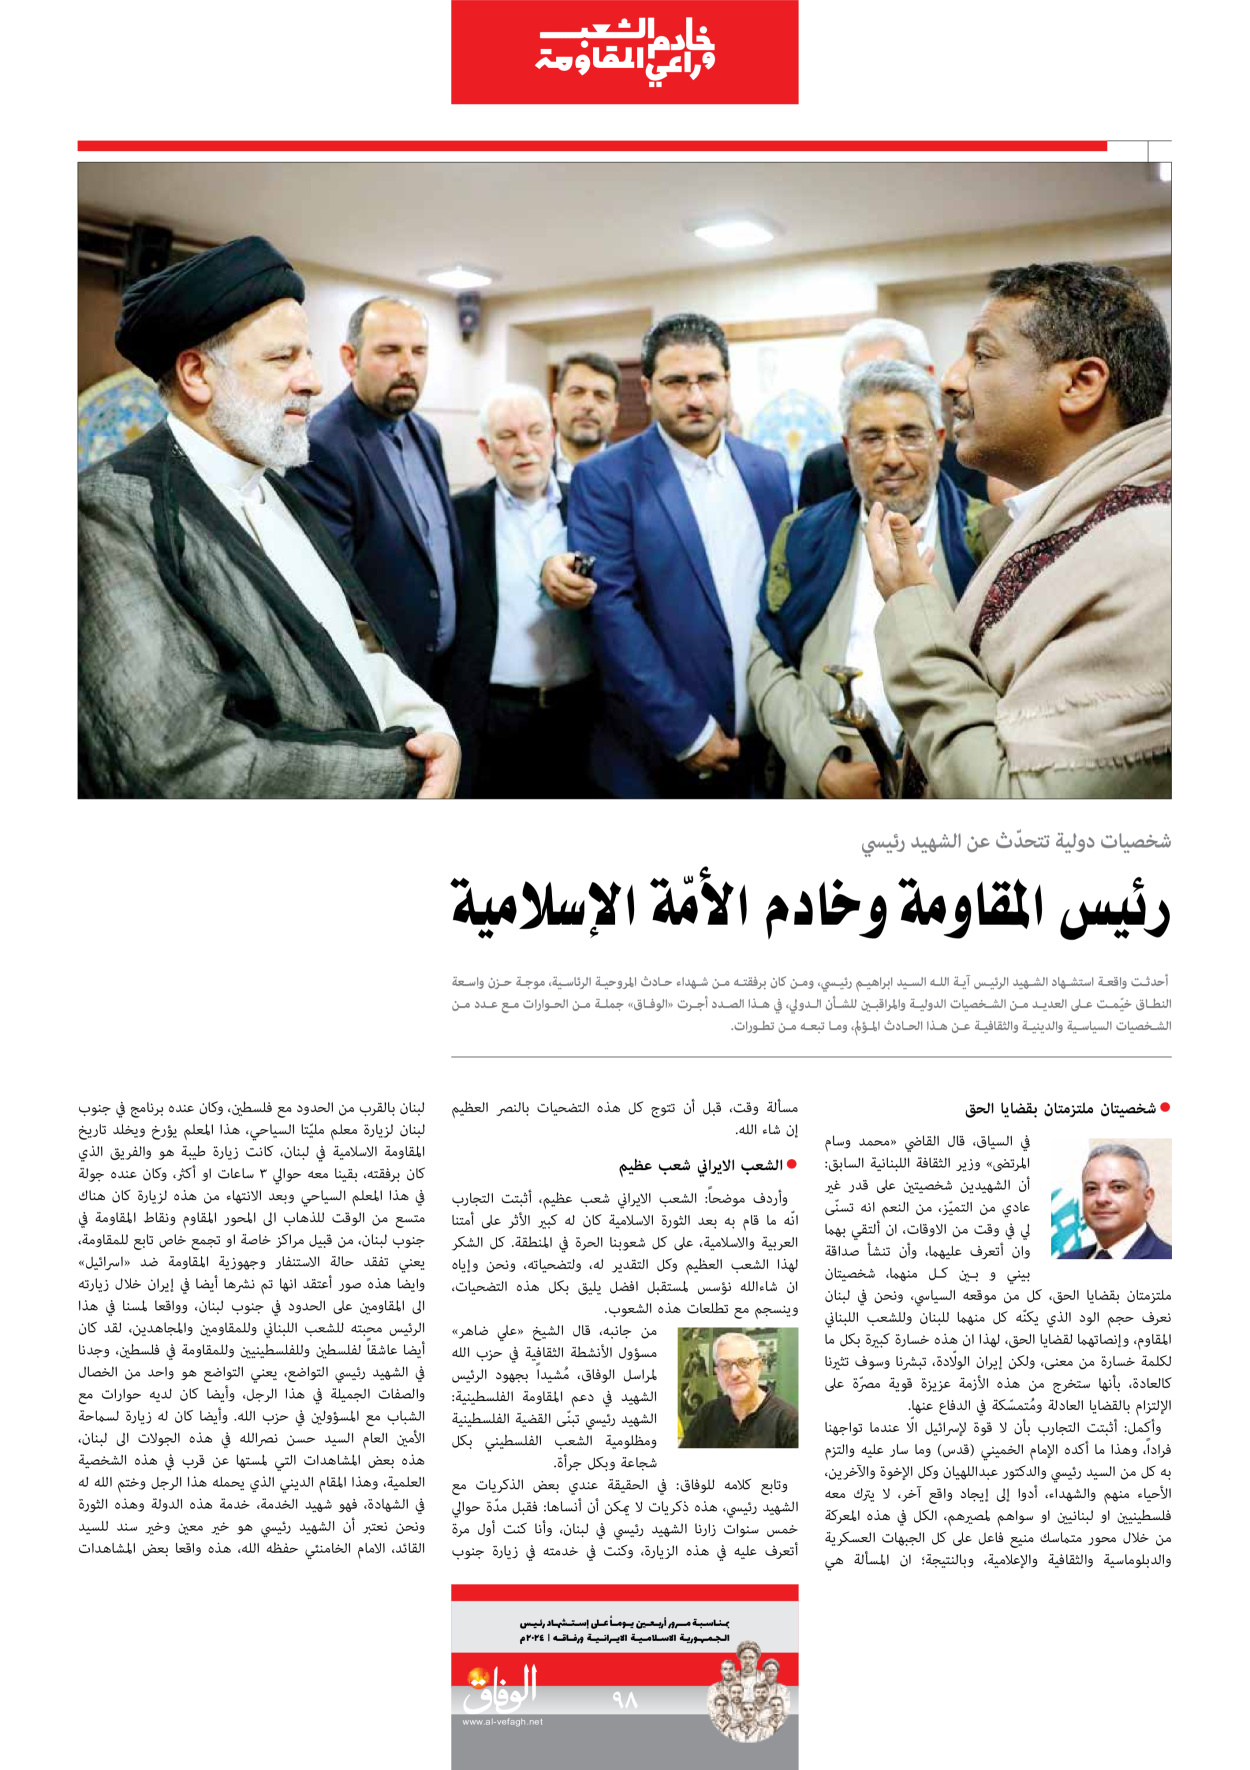 صحیفة ایران الدولیة الوفاق - ملحق ویژه نامه چهلم شهید رییسی - ٢٩ يونيو ٢٠٢٤ - الصفحة ۹۷